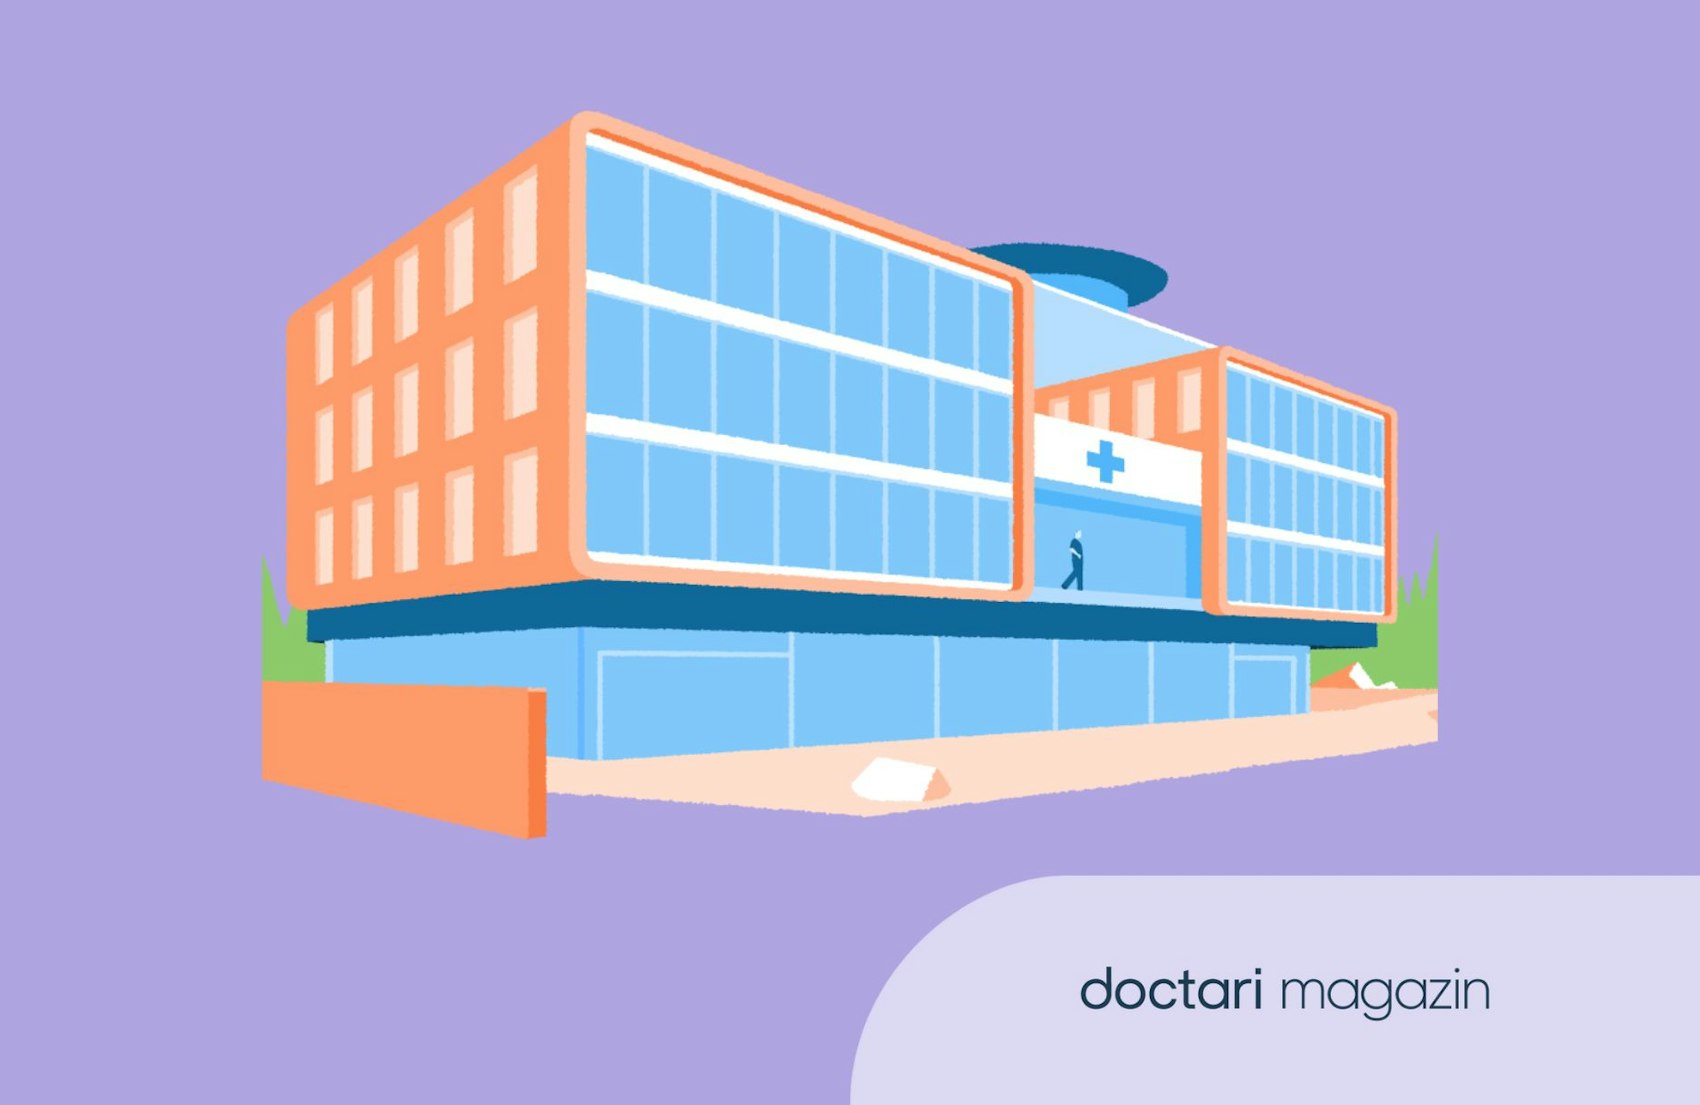 Eine Illustration zeigt ein großes Krankenhausgebäude